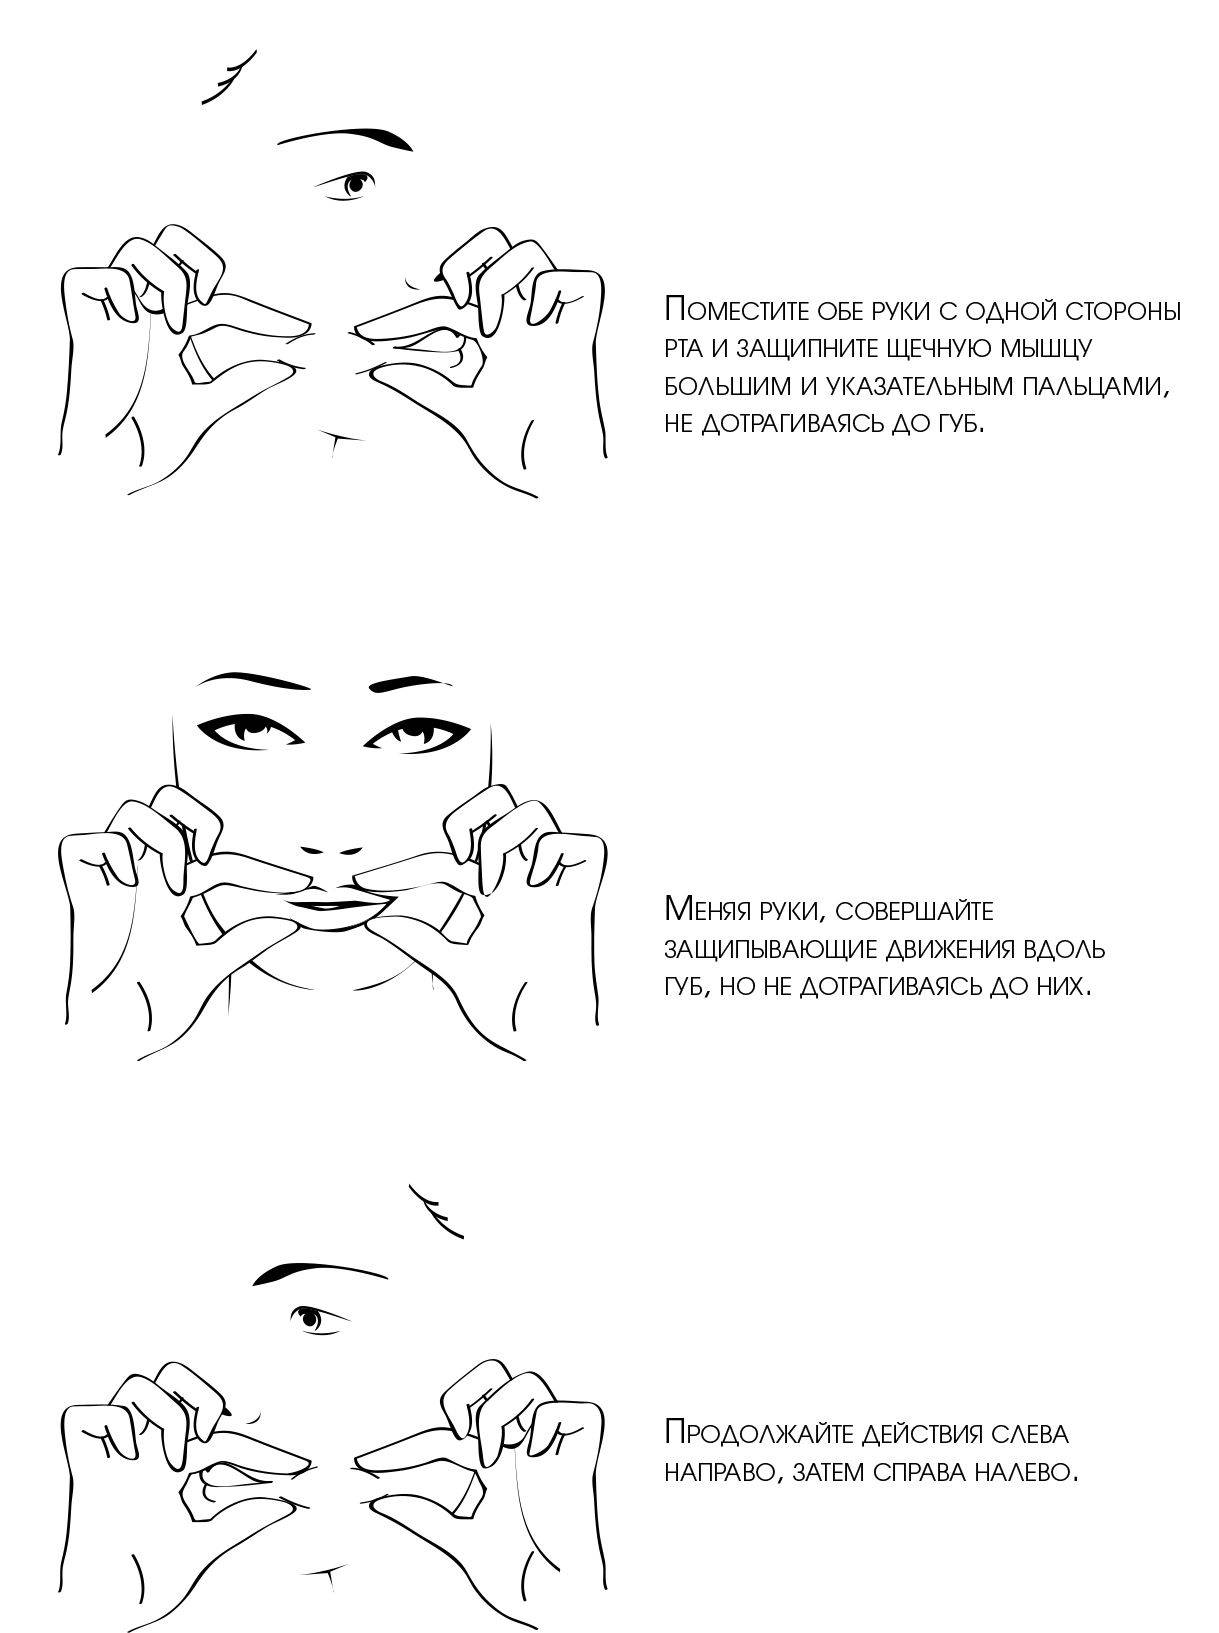 Массаж от морщин - корректирующий массаж лица и разные техники проведения
 | 7hands